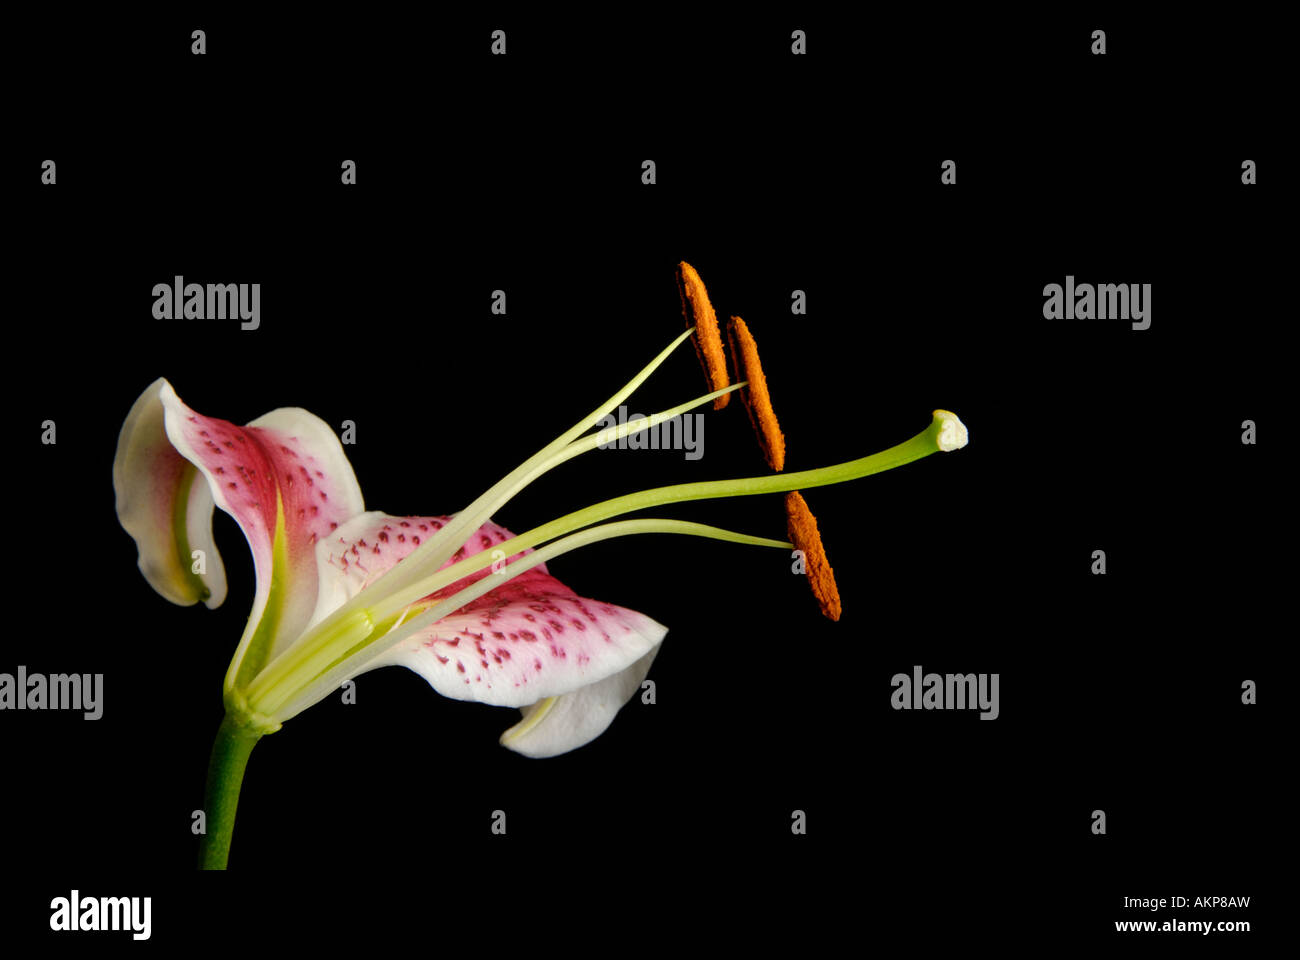 Querschnitt der Blume zeigt Eierstock, Fruchtblatt, Staubblätter und anderen reproduktiven Strukturen teilen Stockfoto